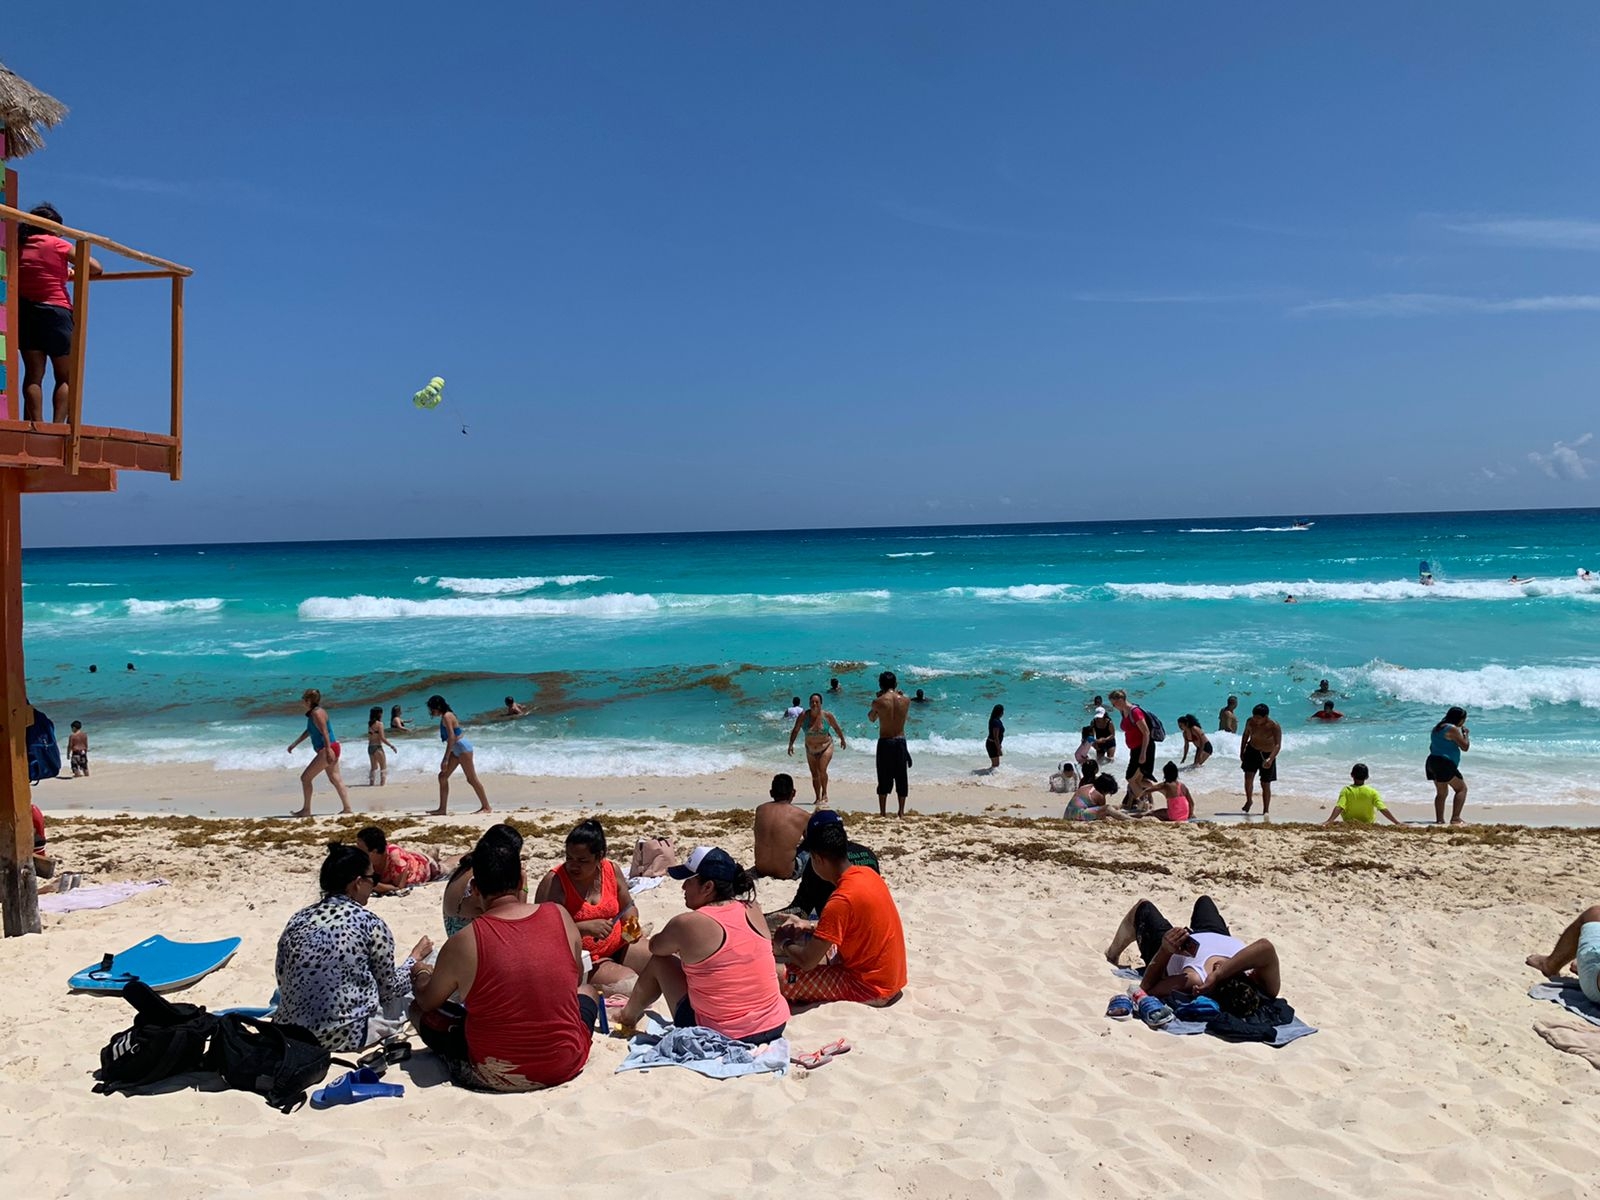 Bañistas disfrutan la llegada de la Primavera en Playa Delfines, en Cancún: EN VIVO